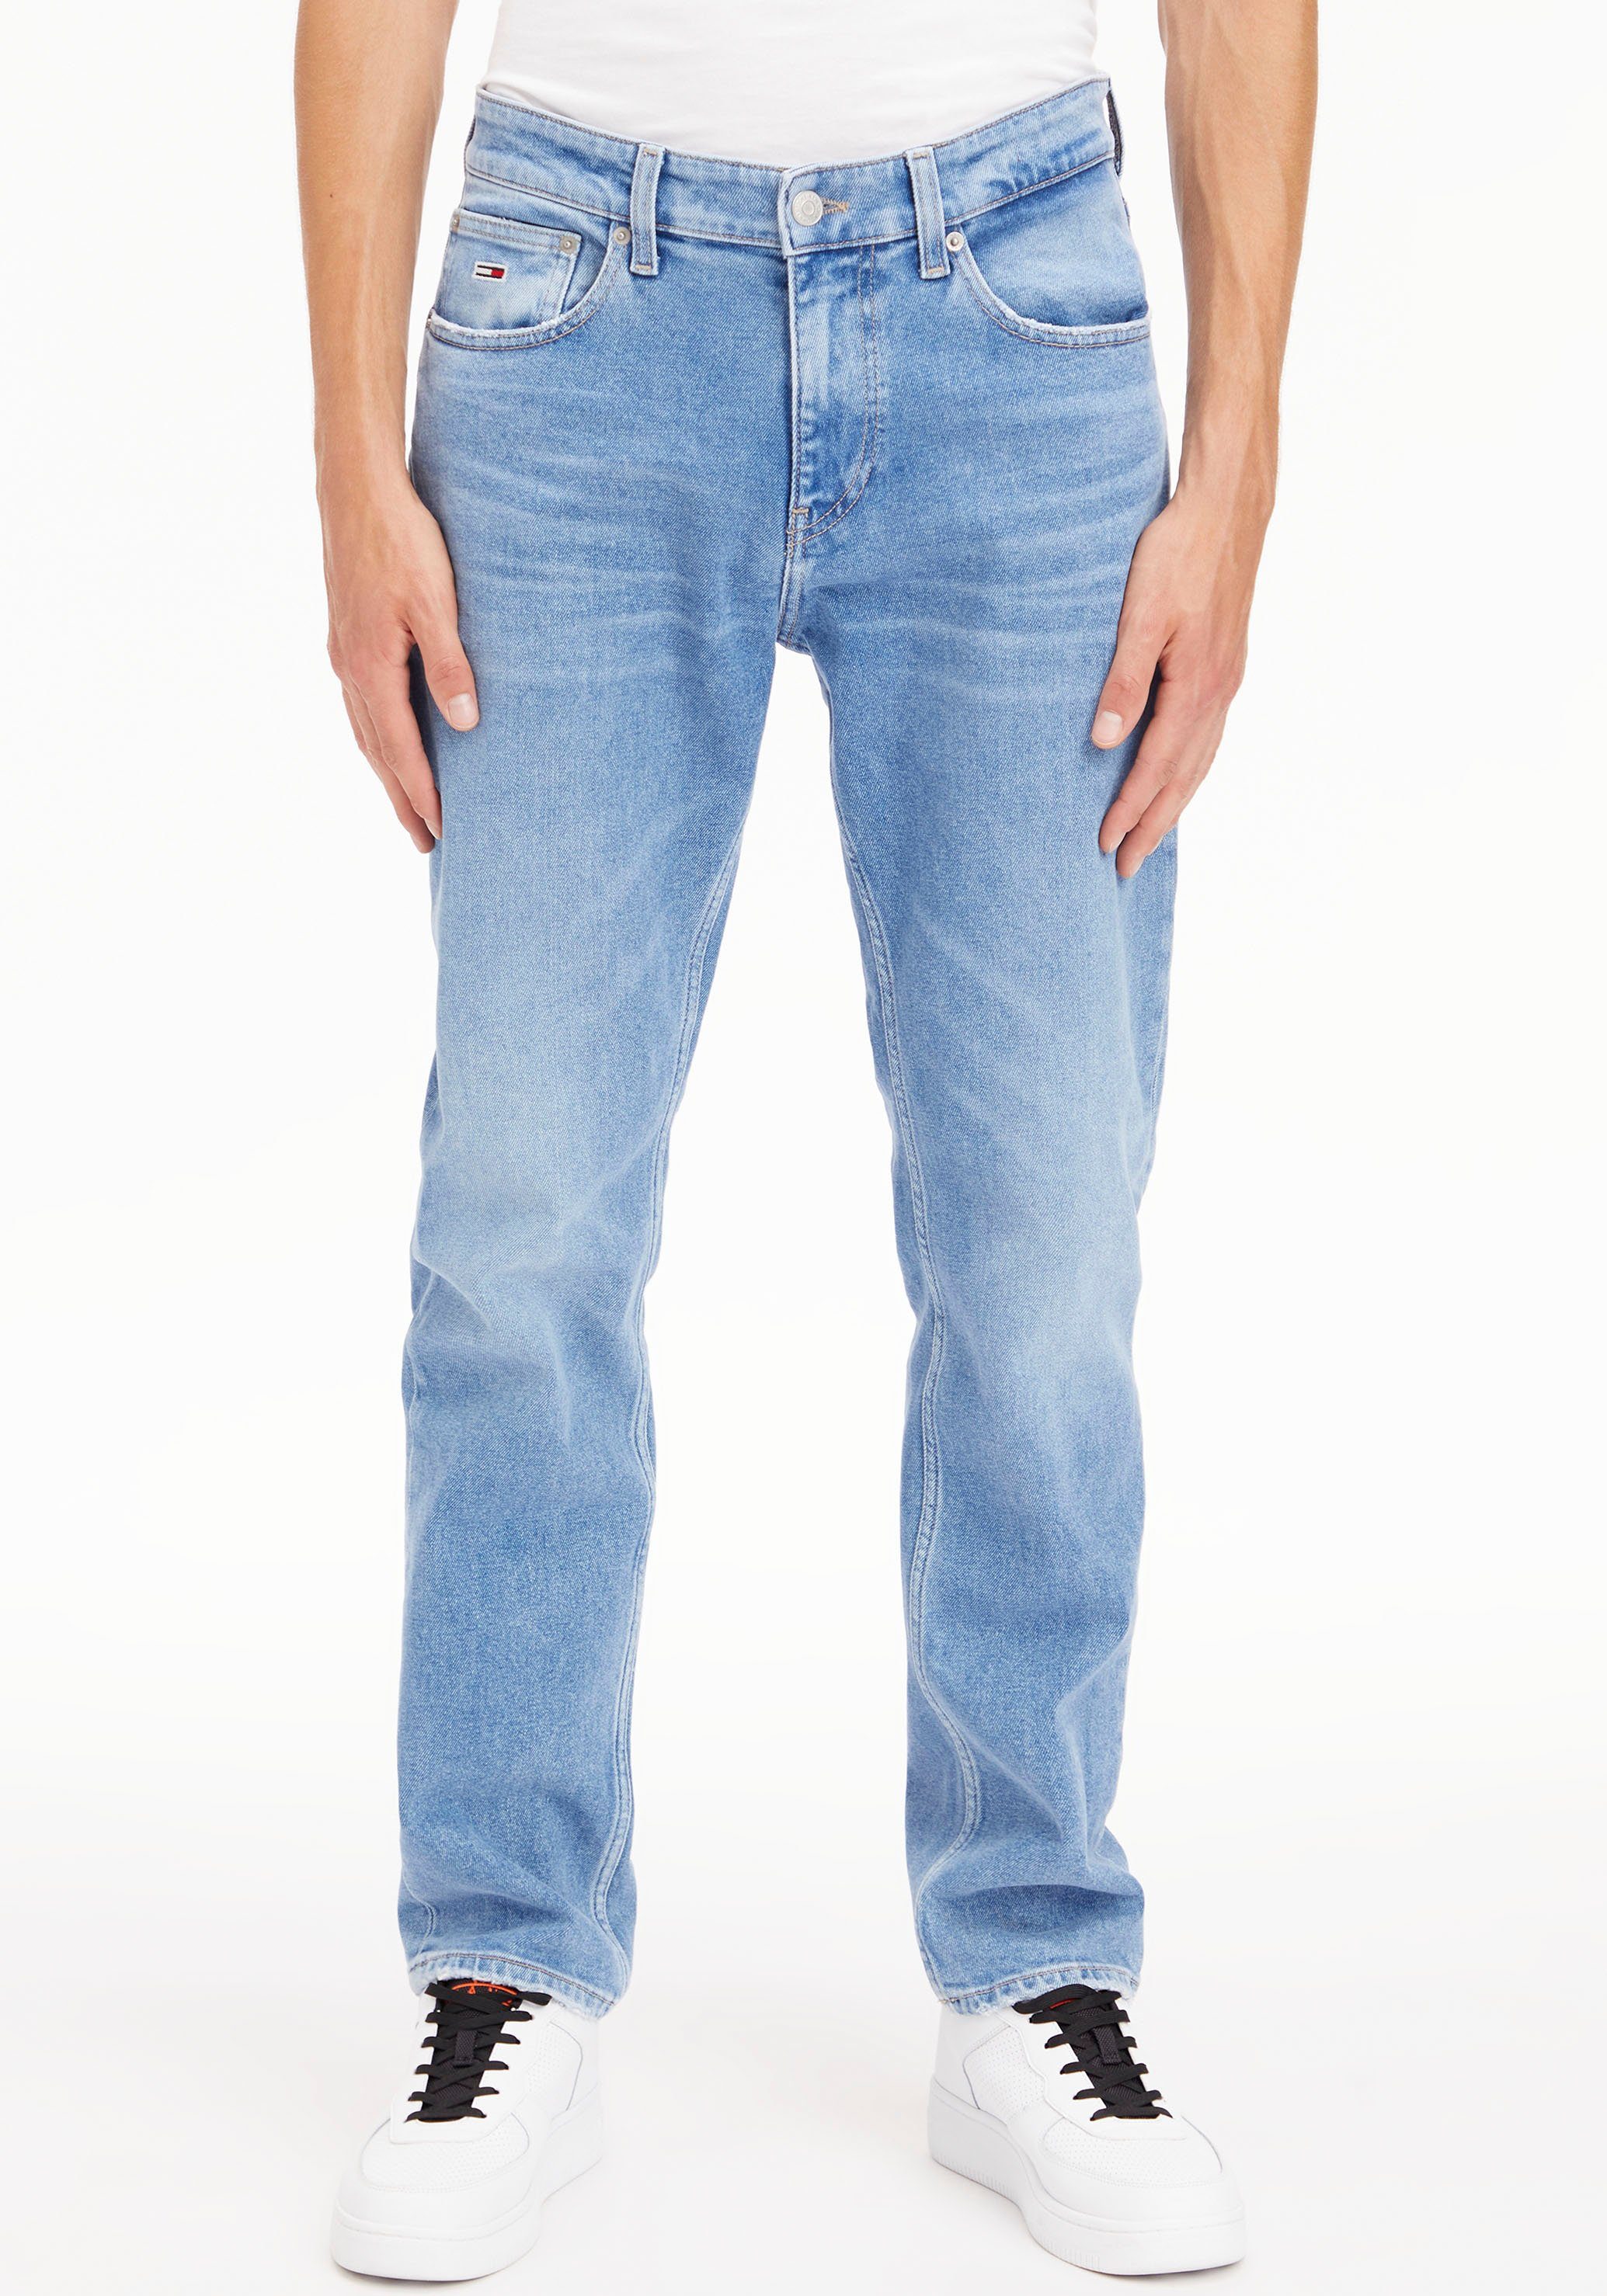 Tommy Jeans Jeansshorts HOT PANT SHORT BG0036 mit Destroyed- und Abriebeffekten